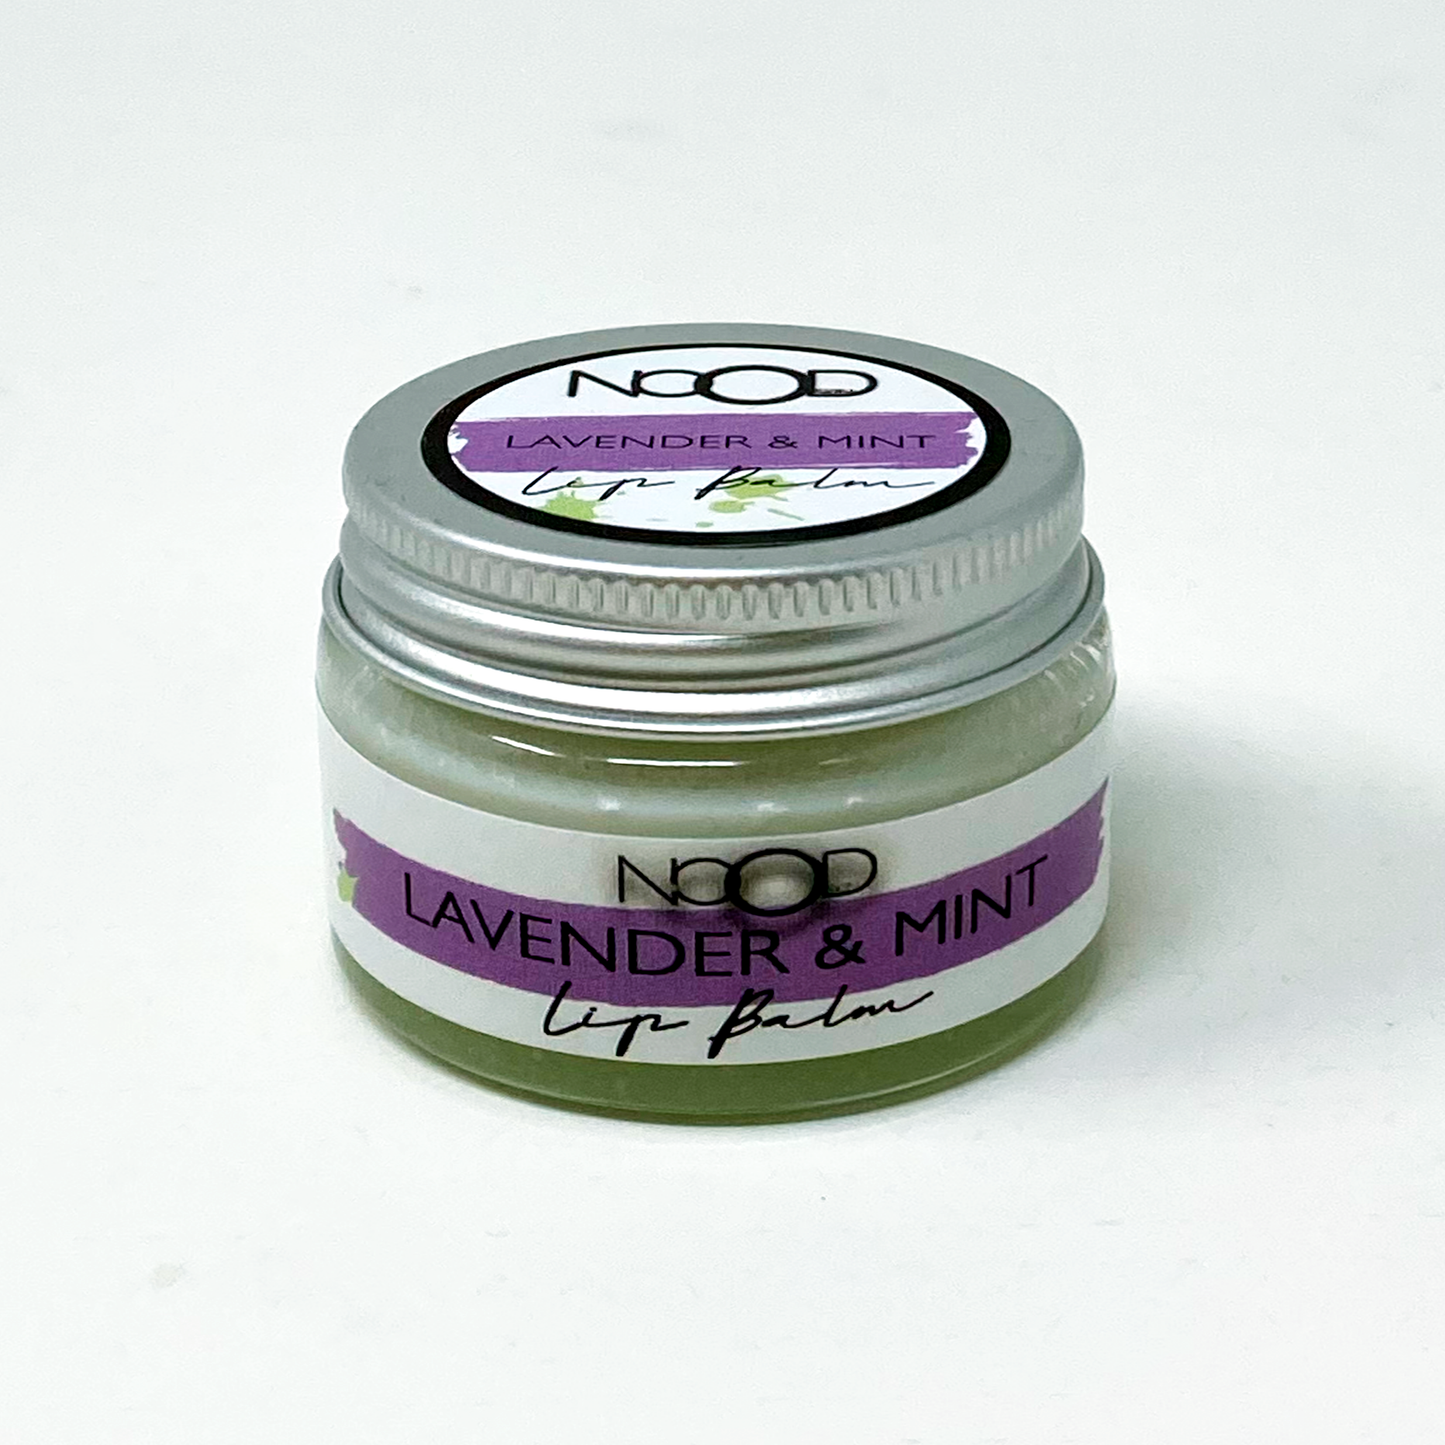 Lavender & mint lip balm